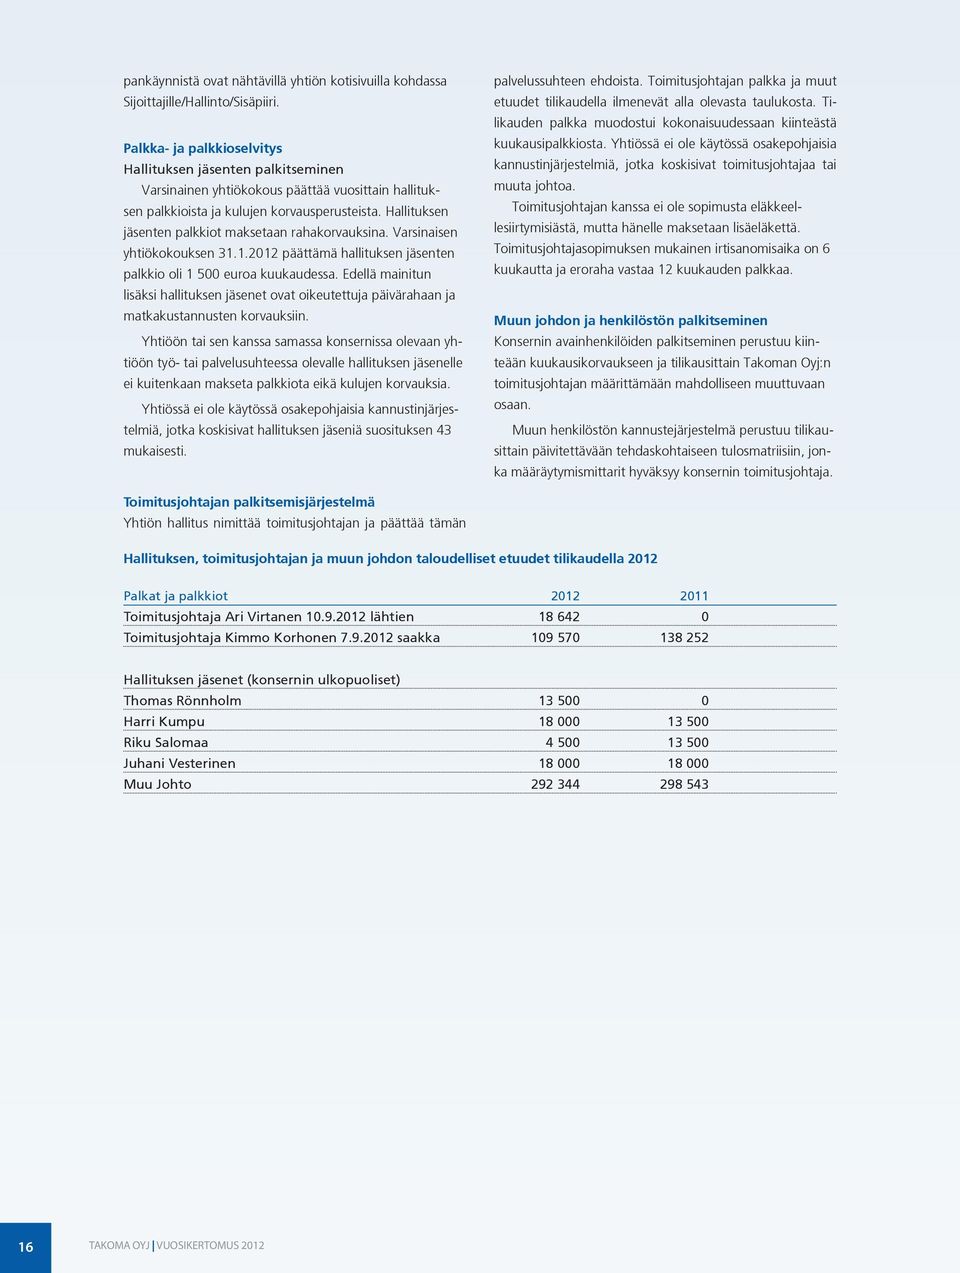 Hallituksen jäsenten palkkiot maksetaan rahakorvauksina. Varsinaisen yhtiökokouksen 31.1.2012 päättämä hallituksen jäsenten palkkio oli 1 500 euroa kuukaudessa.